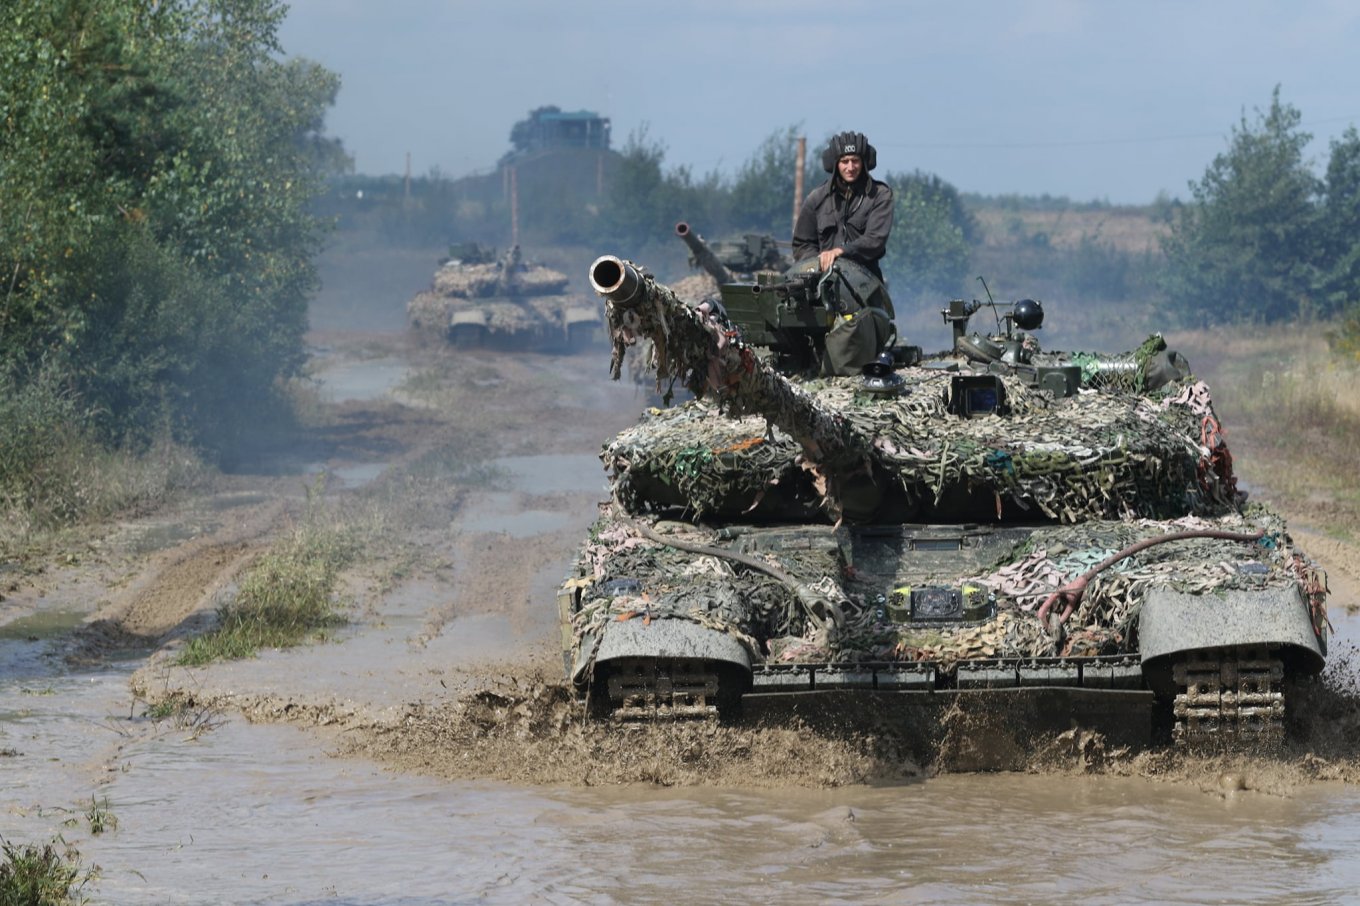 на Рівненському загальновійськовому полігоні проходить конкурс на кращий танковий взвод Сухопутних військ ЗСУ, Defense Express